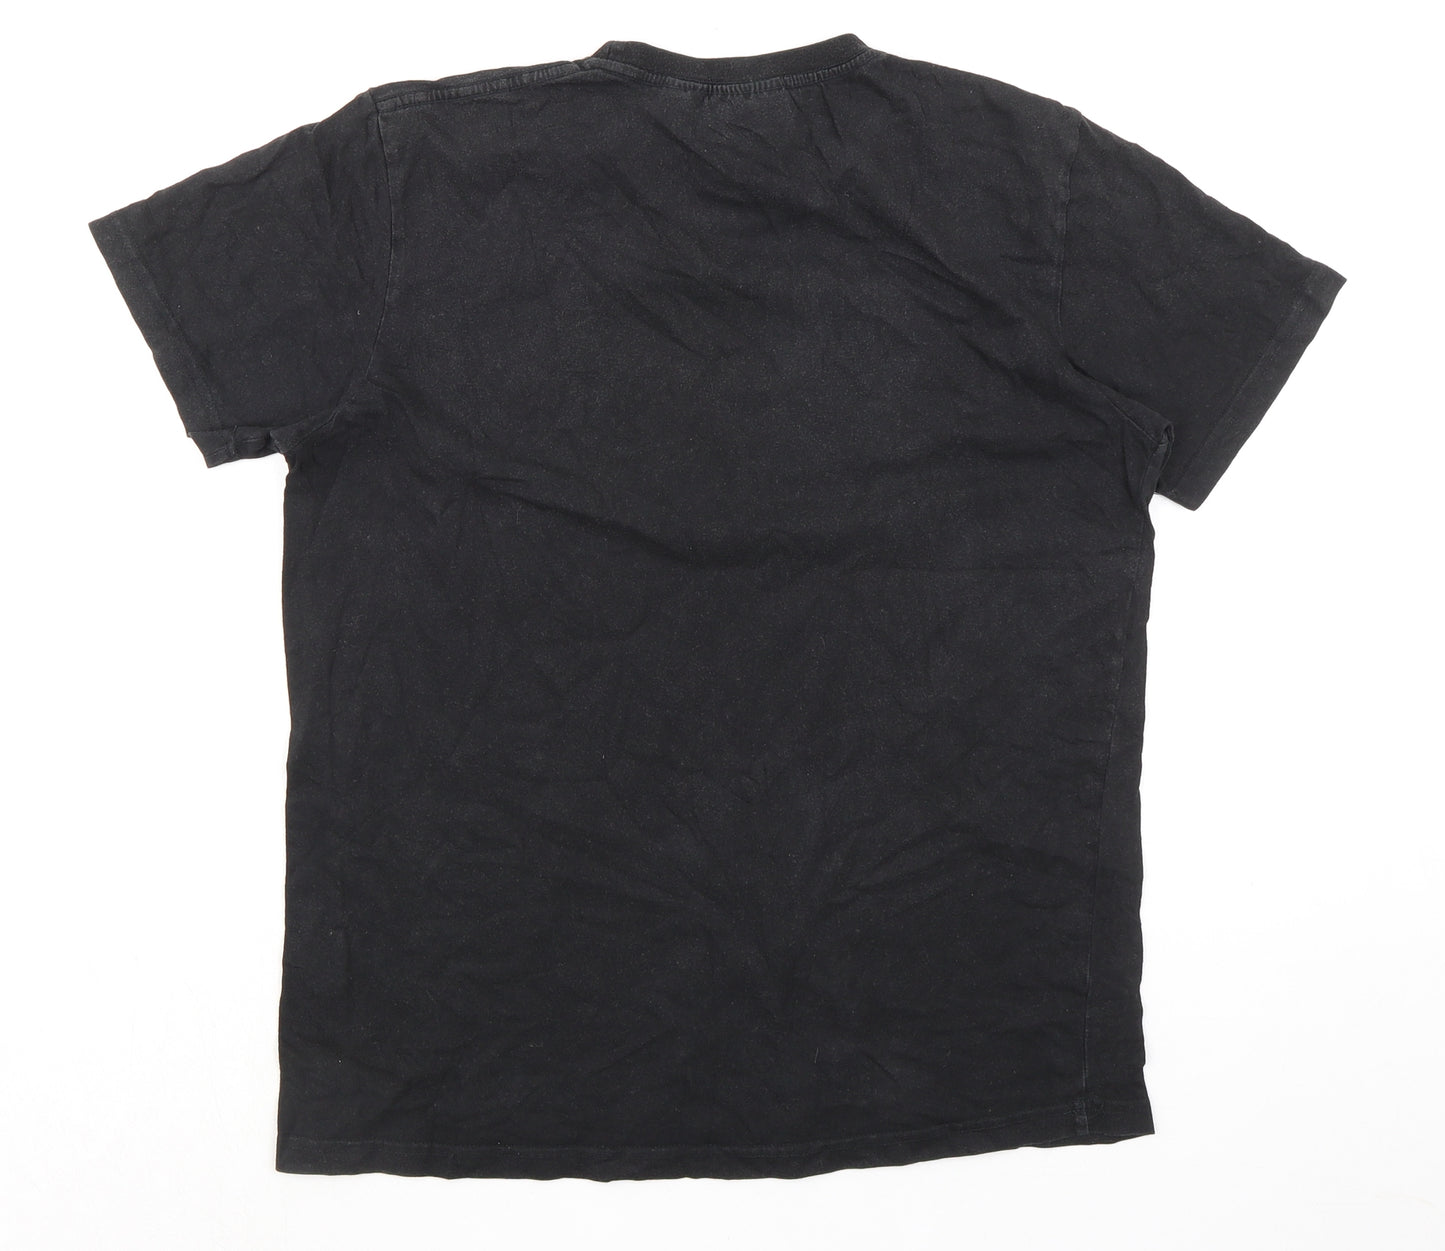 NICCE London Mens Black Cotton T-Shirt Size M Crew Neck